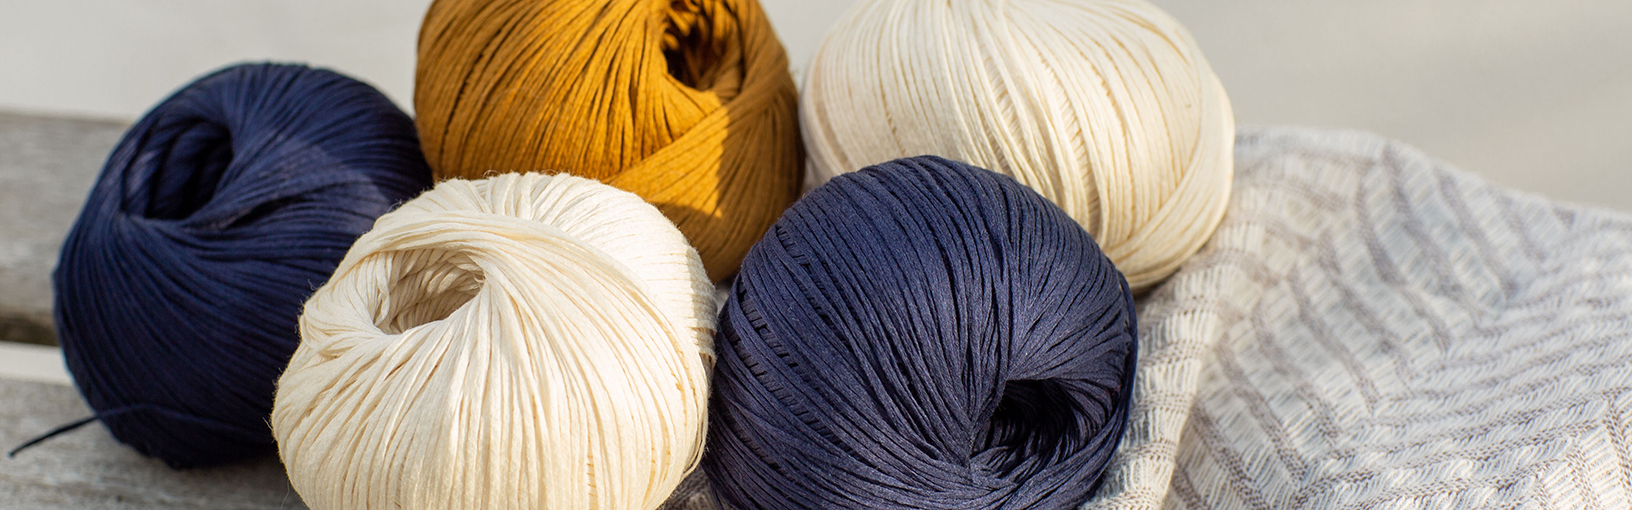 Garn av høy kvalitet til strikking, hekling og toving LANA GROSSA<br> ull & garn | Hand-dyed